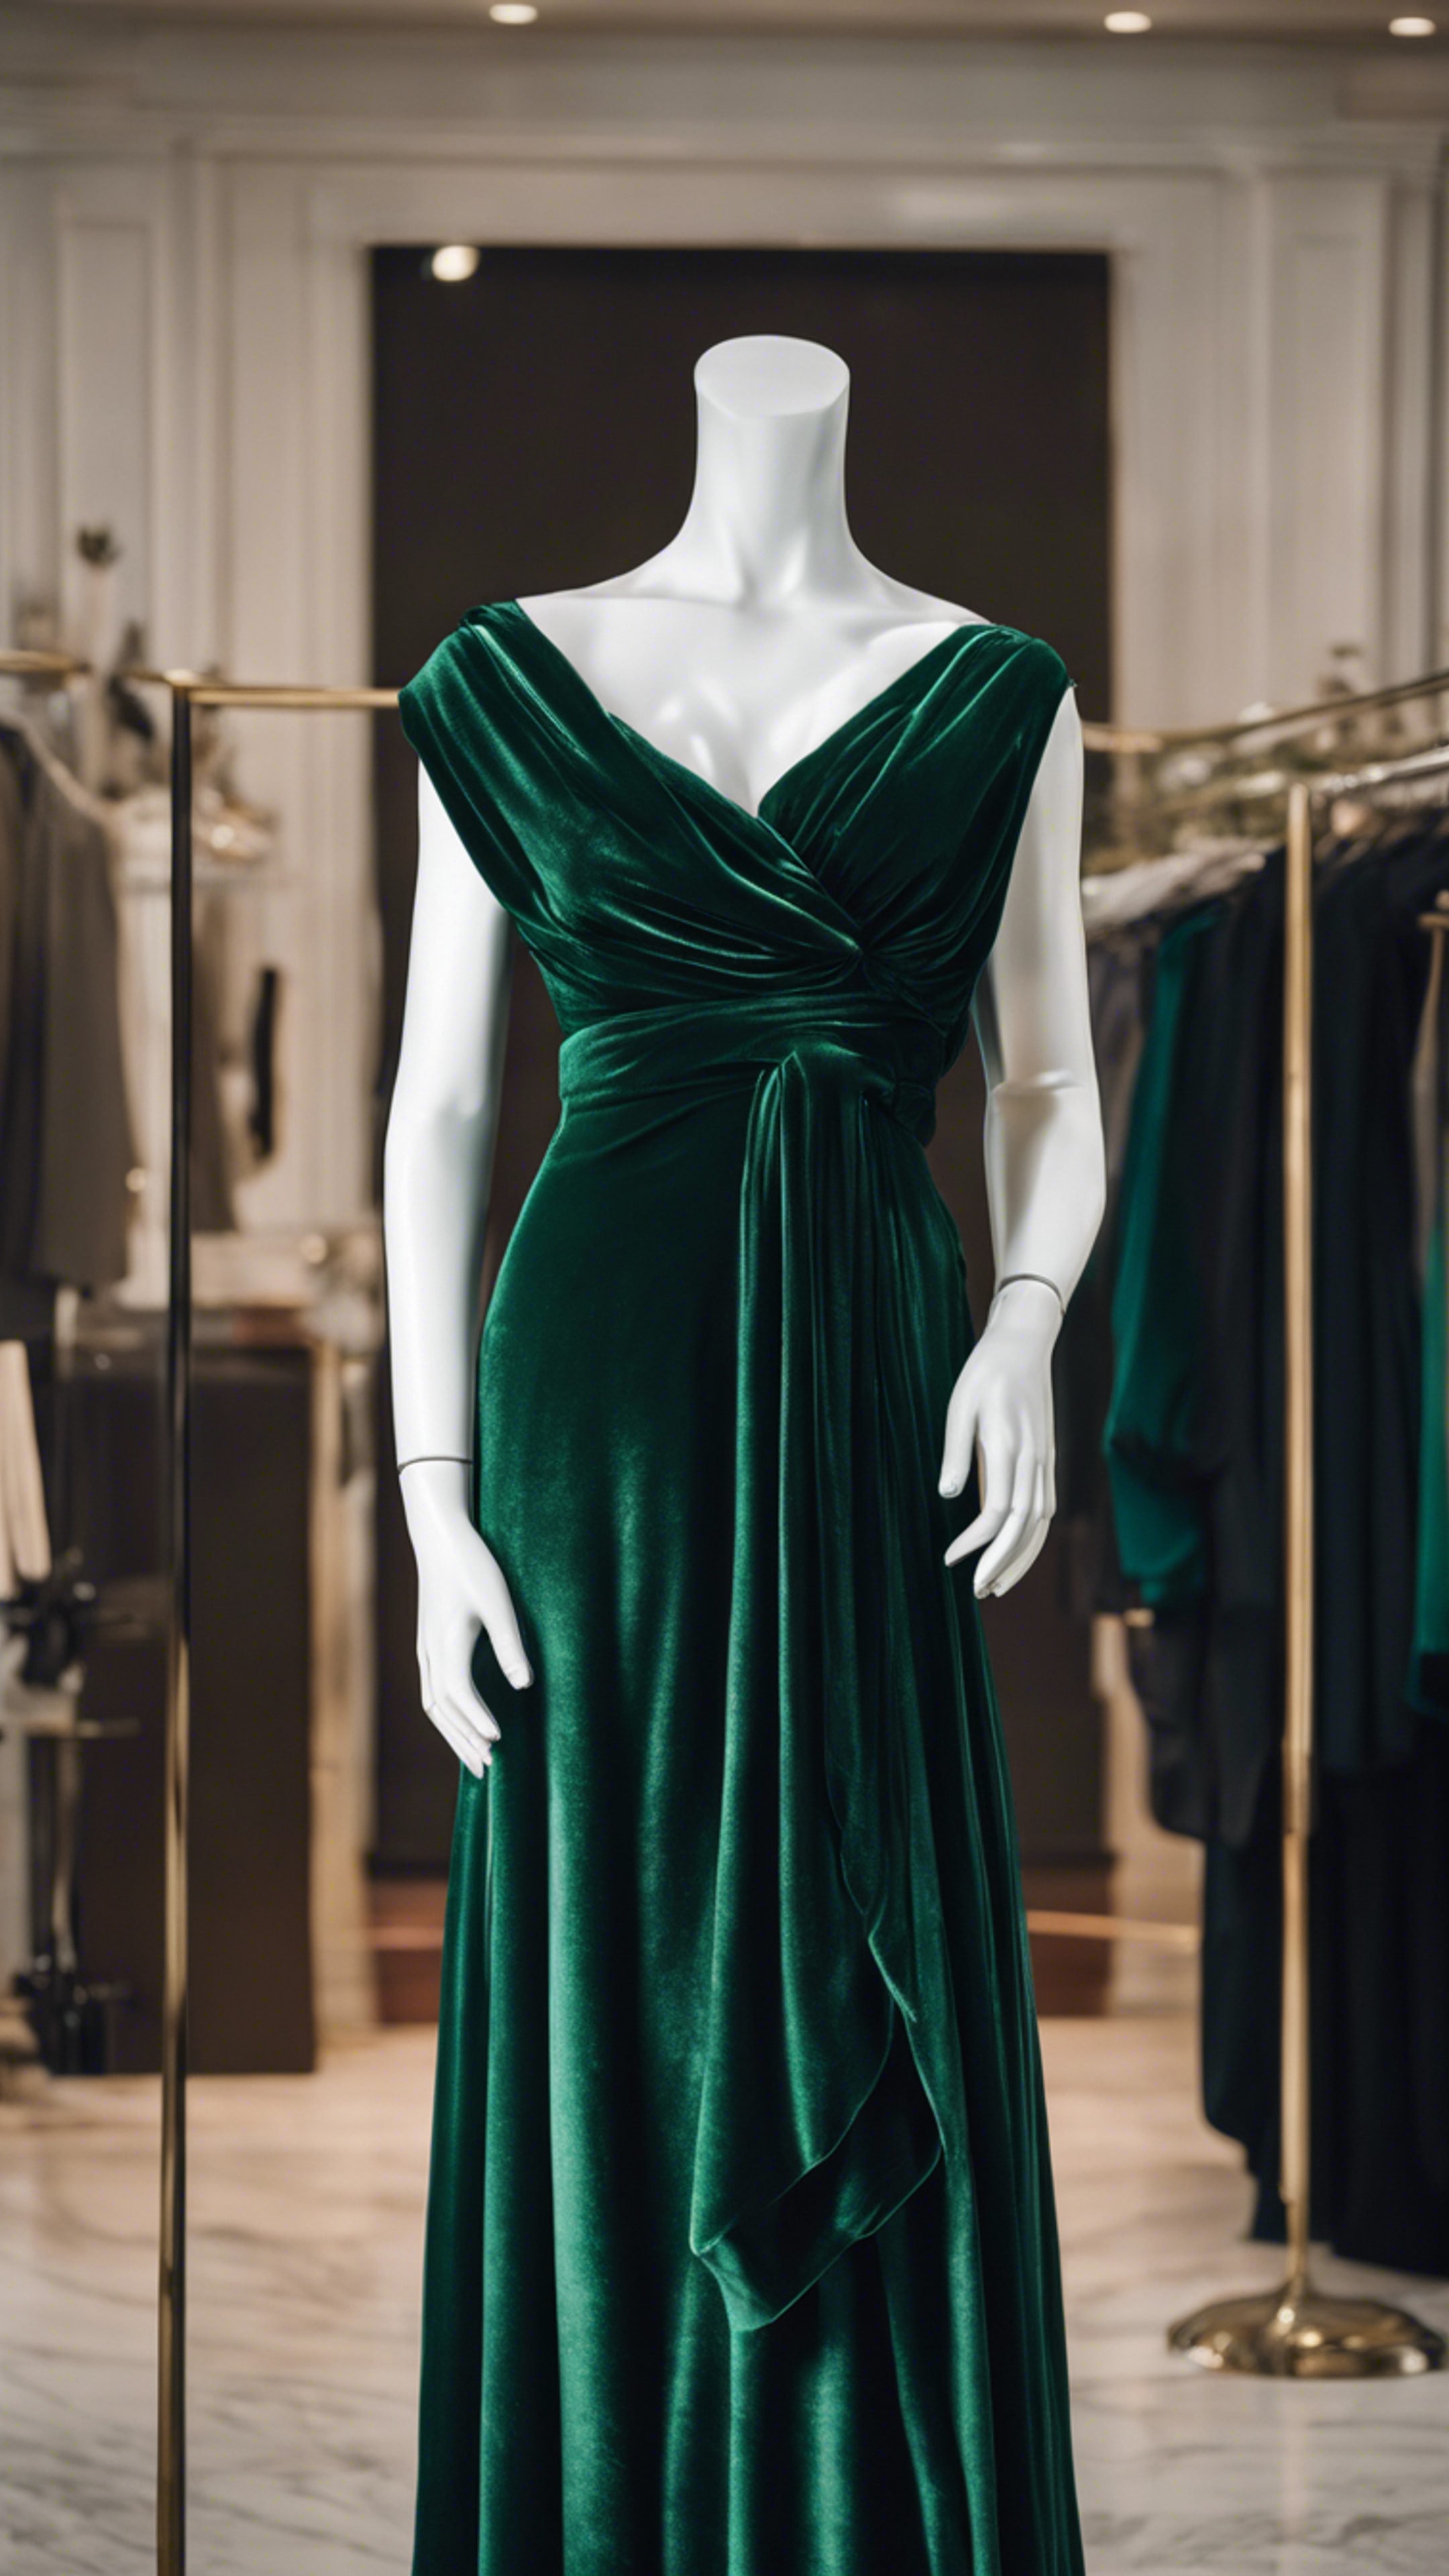 A classy dark green velvet dress draped on a mannequin. ورق الجدران[4958bfaa75d040bb9909]